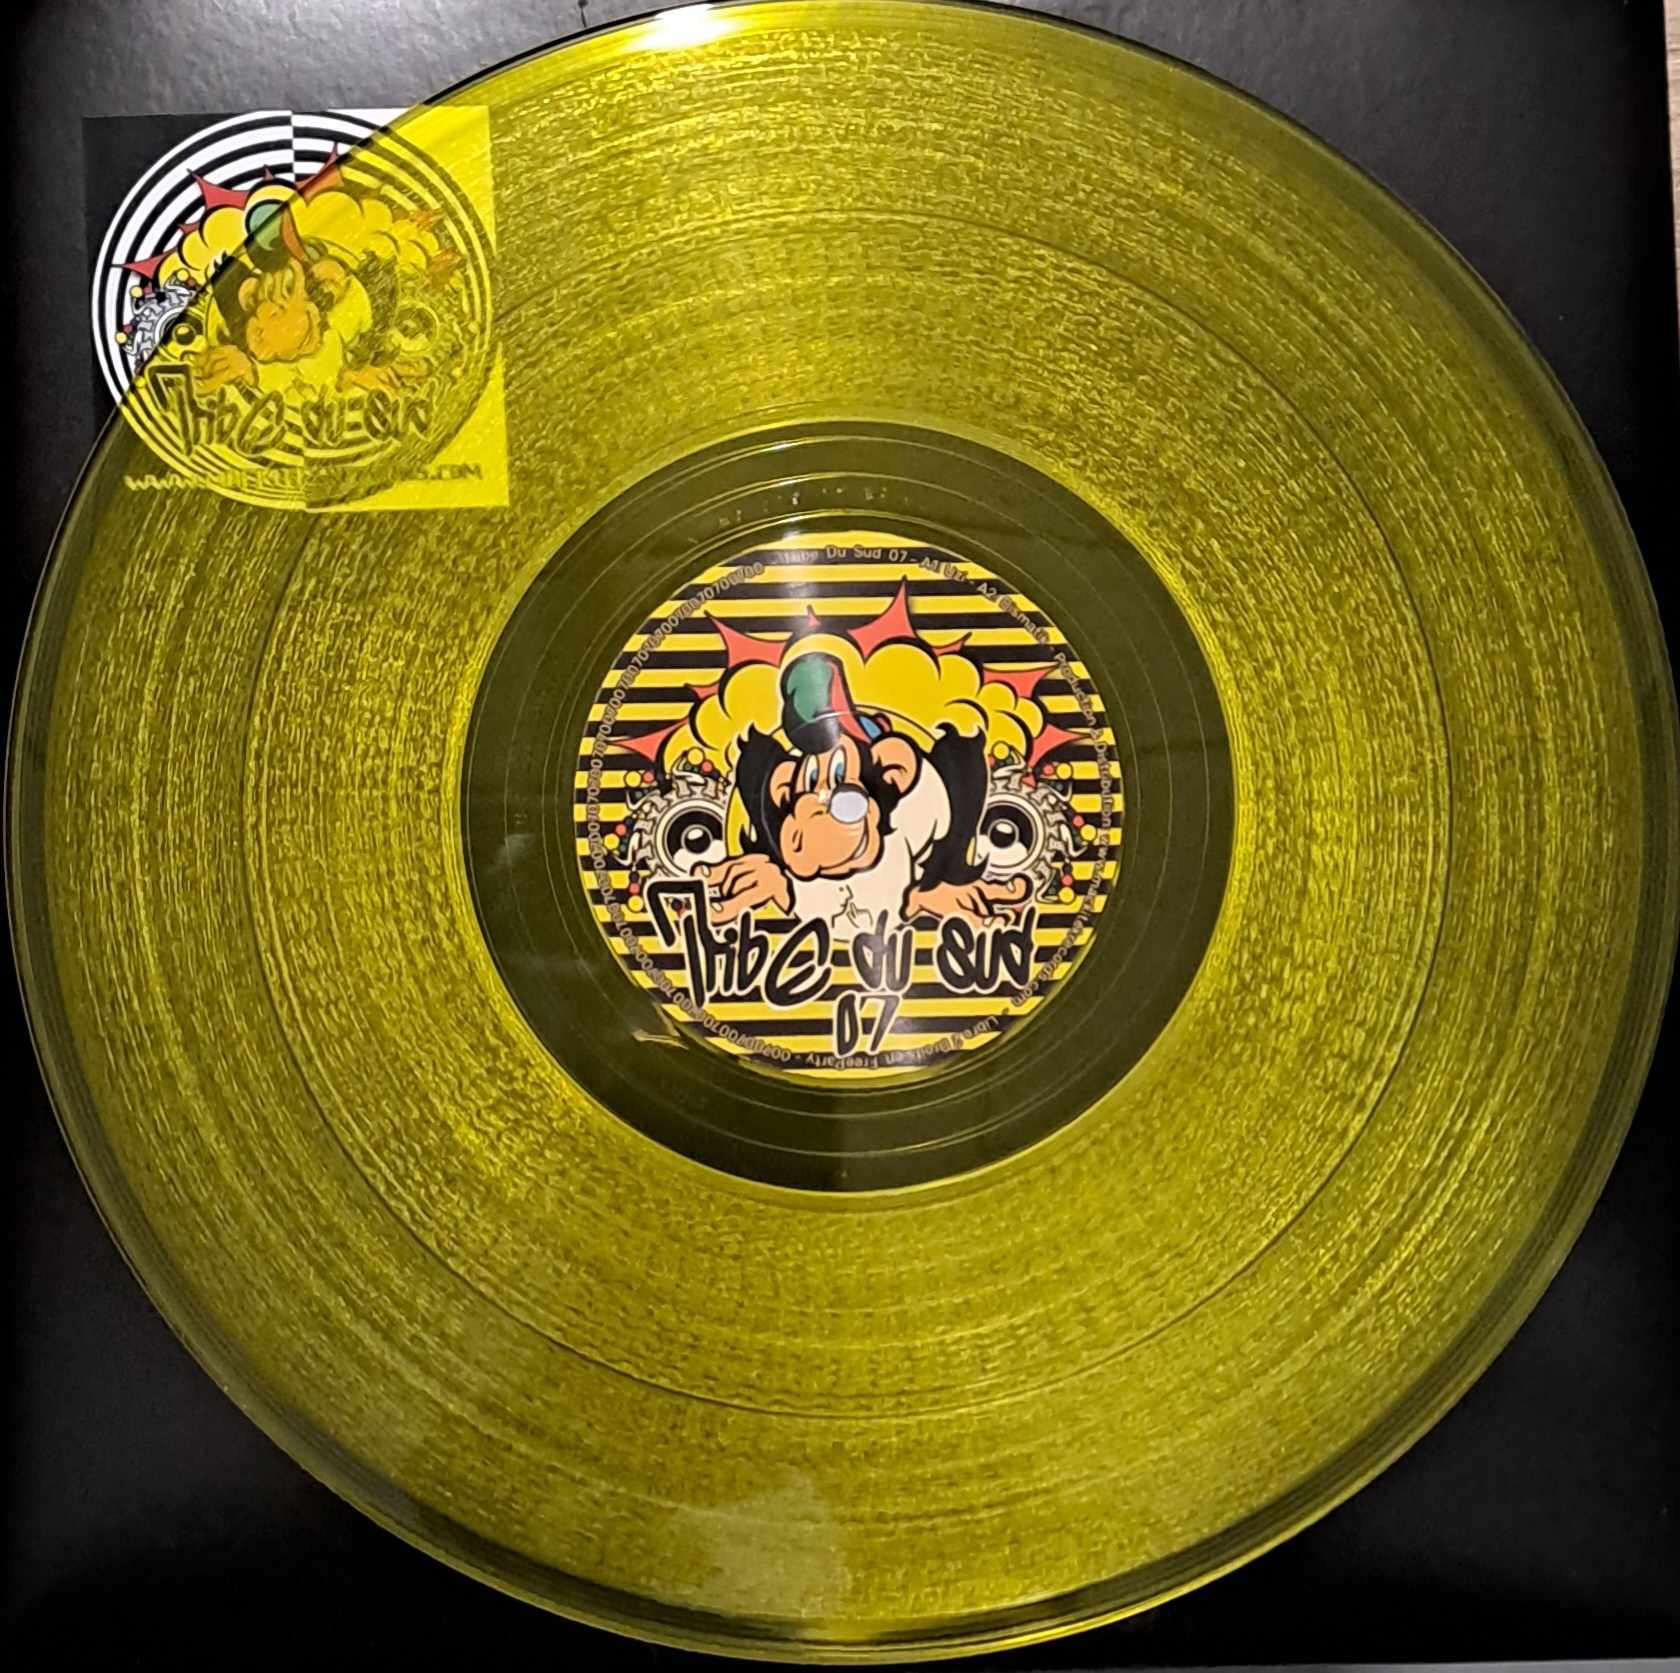 Tribe Du Sud 07 (jaune) (toute dernière copie en stock) - vinyle freetekno